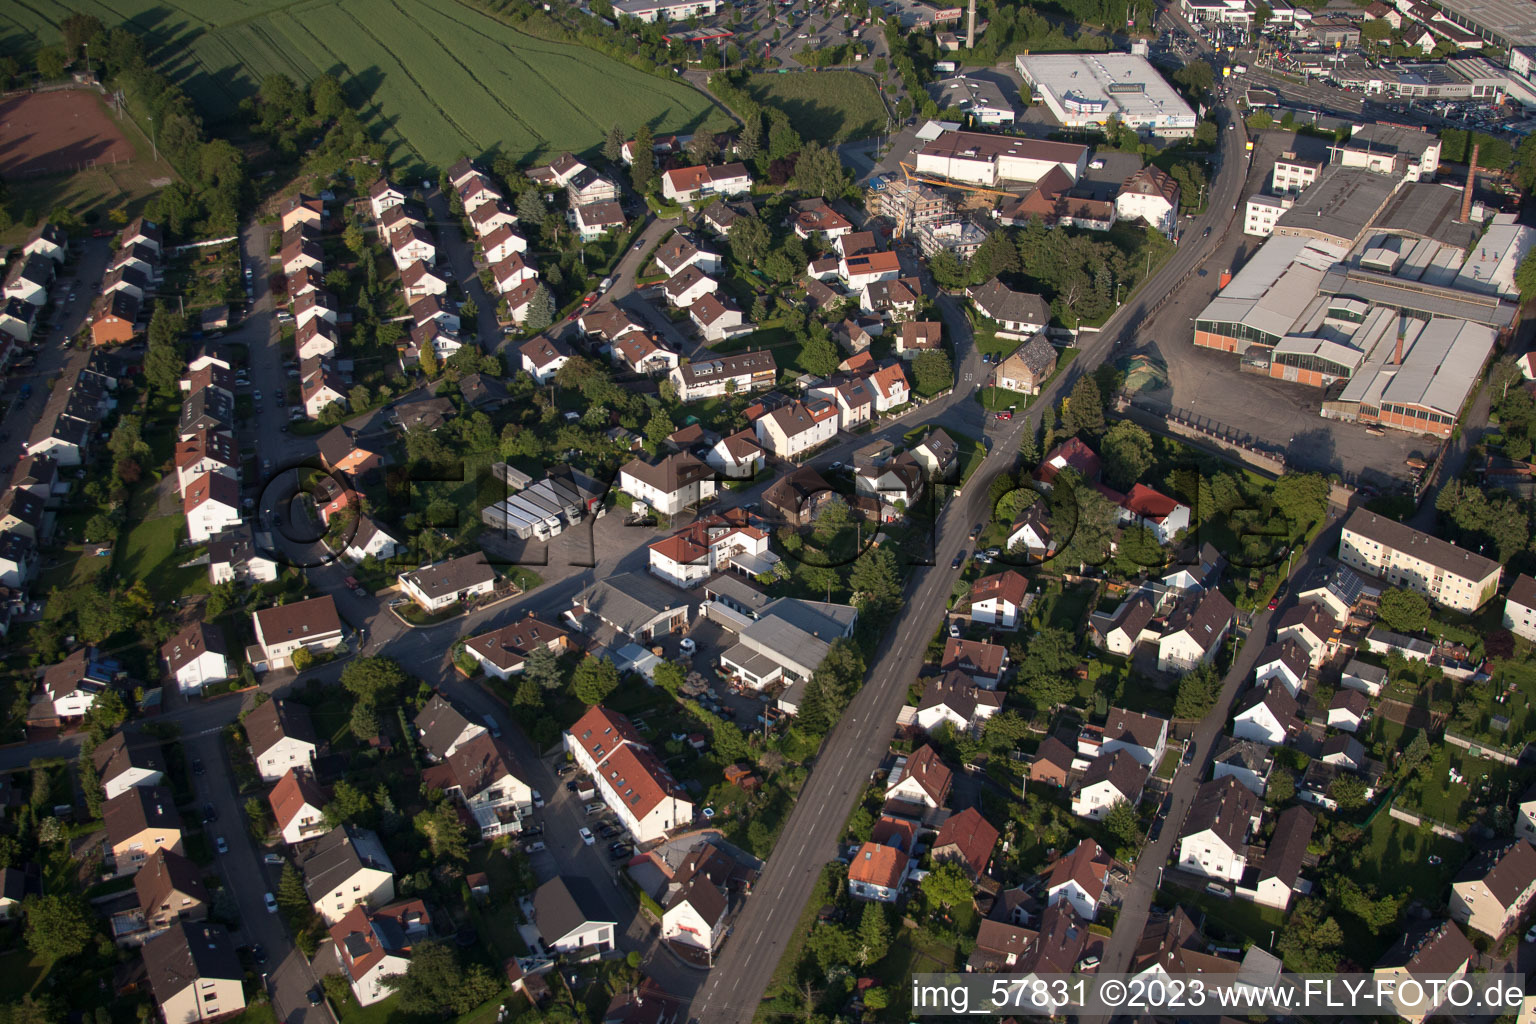 Vue aérienne de Quartier résidentiel d'un lotissement de maisons unifamiliales à le quartier Diedelsheim in Bretten dans le département Bade-Wurtemberg, Allemagne